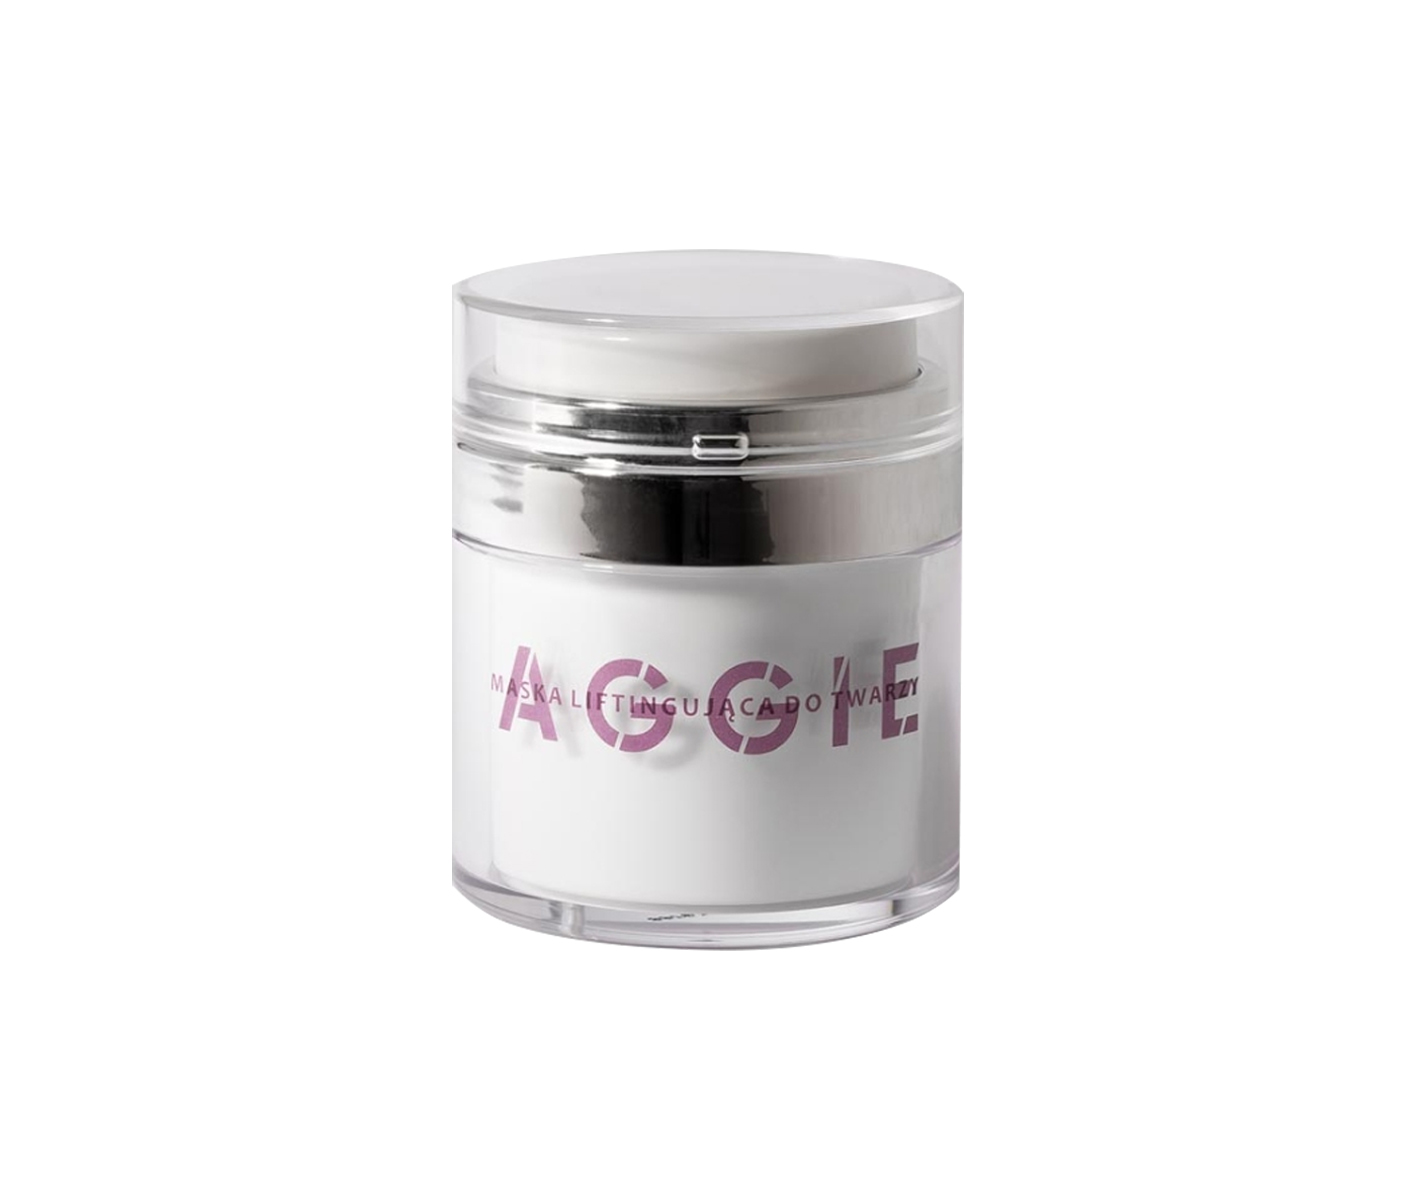 Aggie, makadámiaolaj és E-vitamin arcmaszk bőrre 50+, arcplasztika 